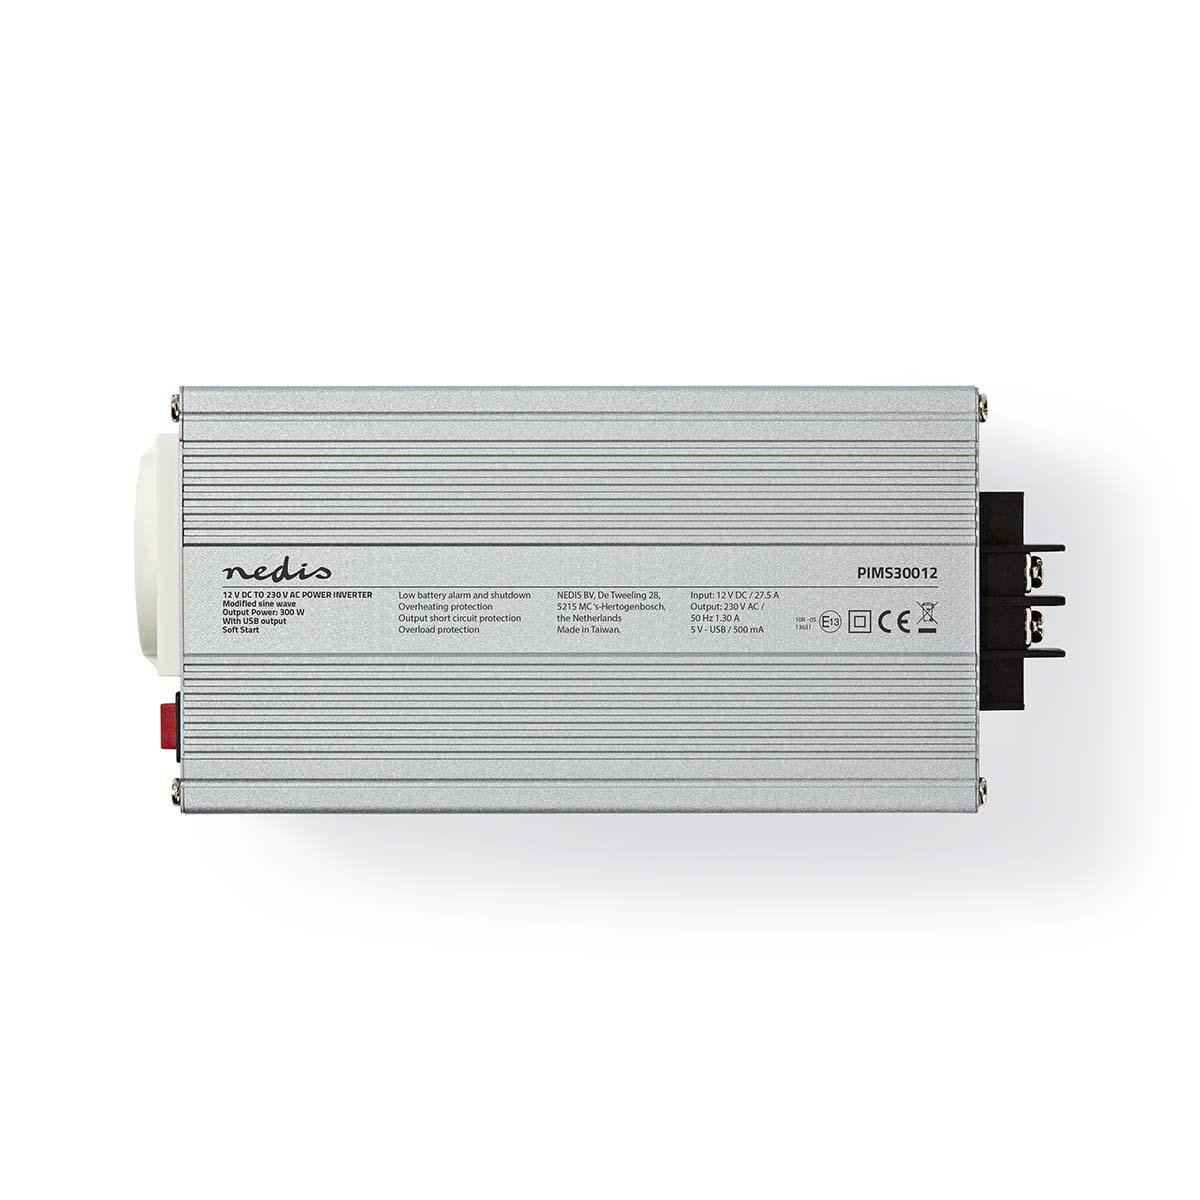 NEDIS PIMS30012 Inverter Power